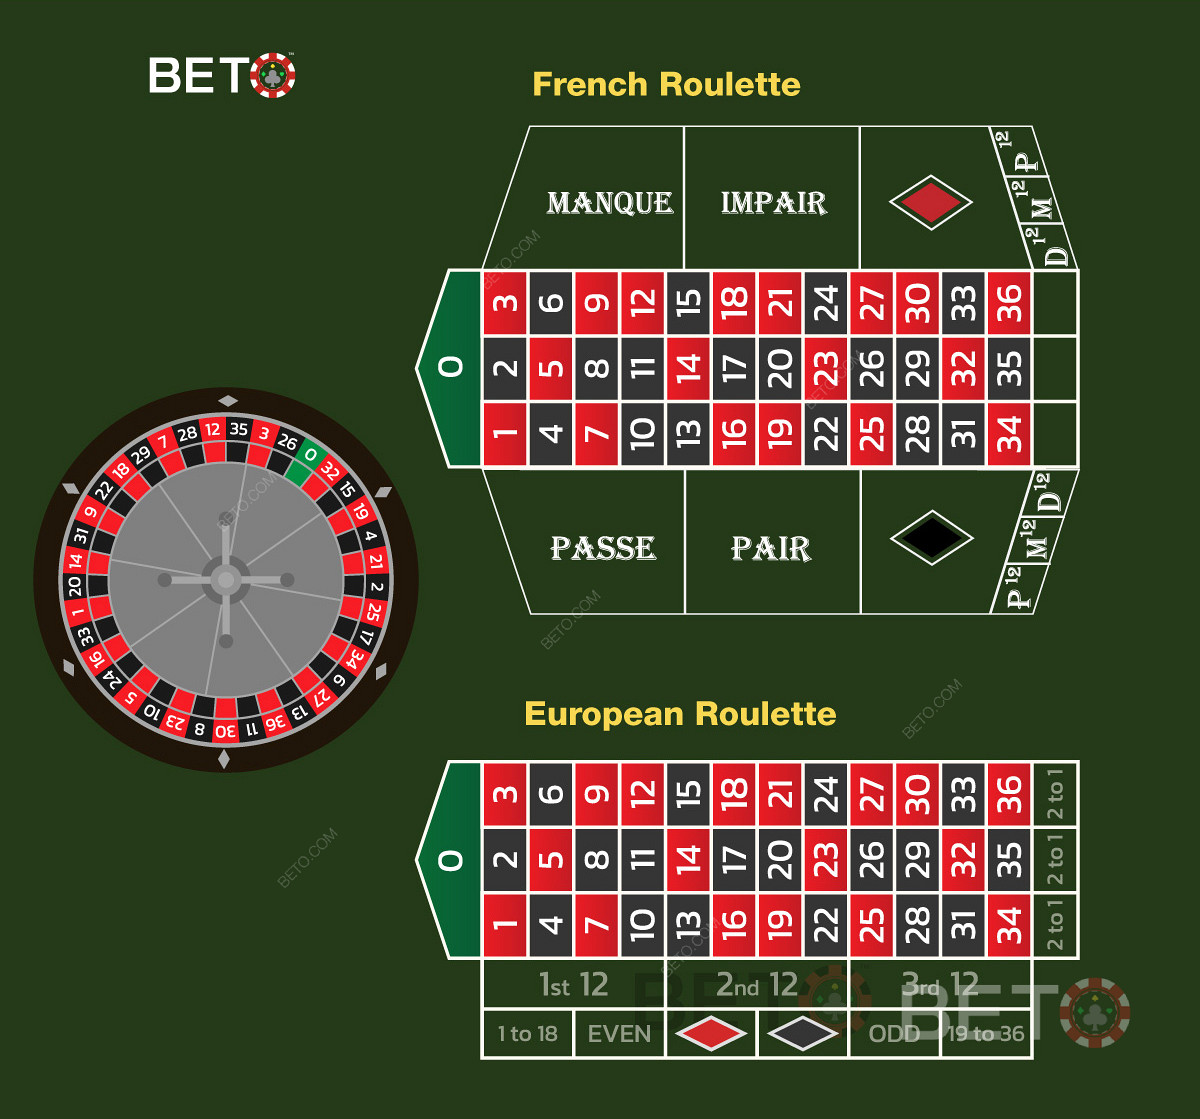 French roulette sammenlignet med European Roulette